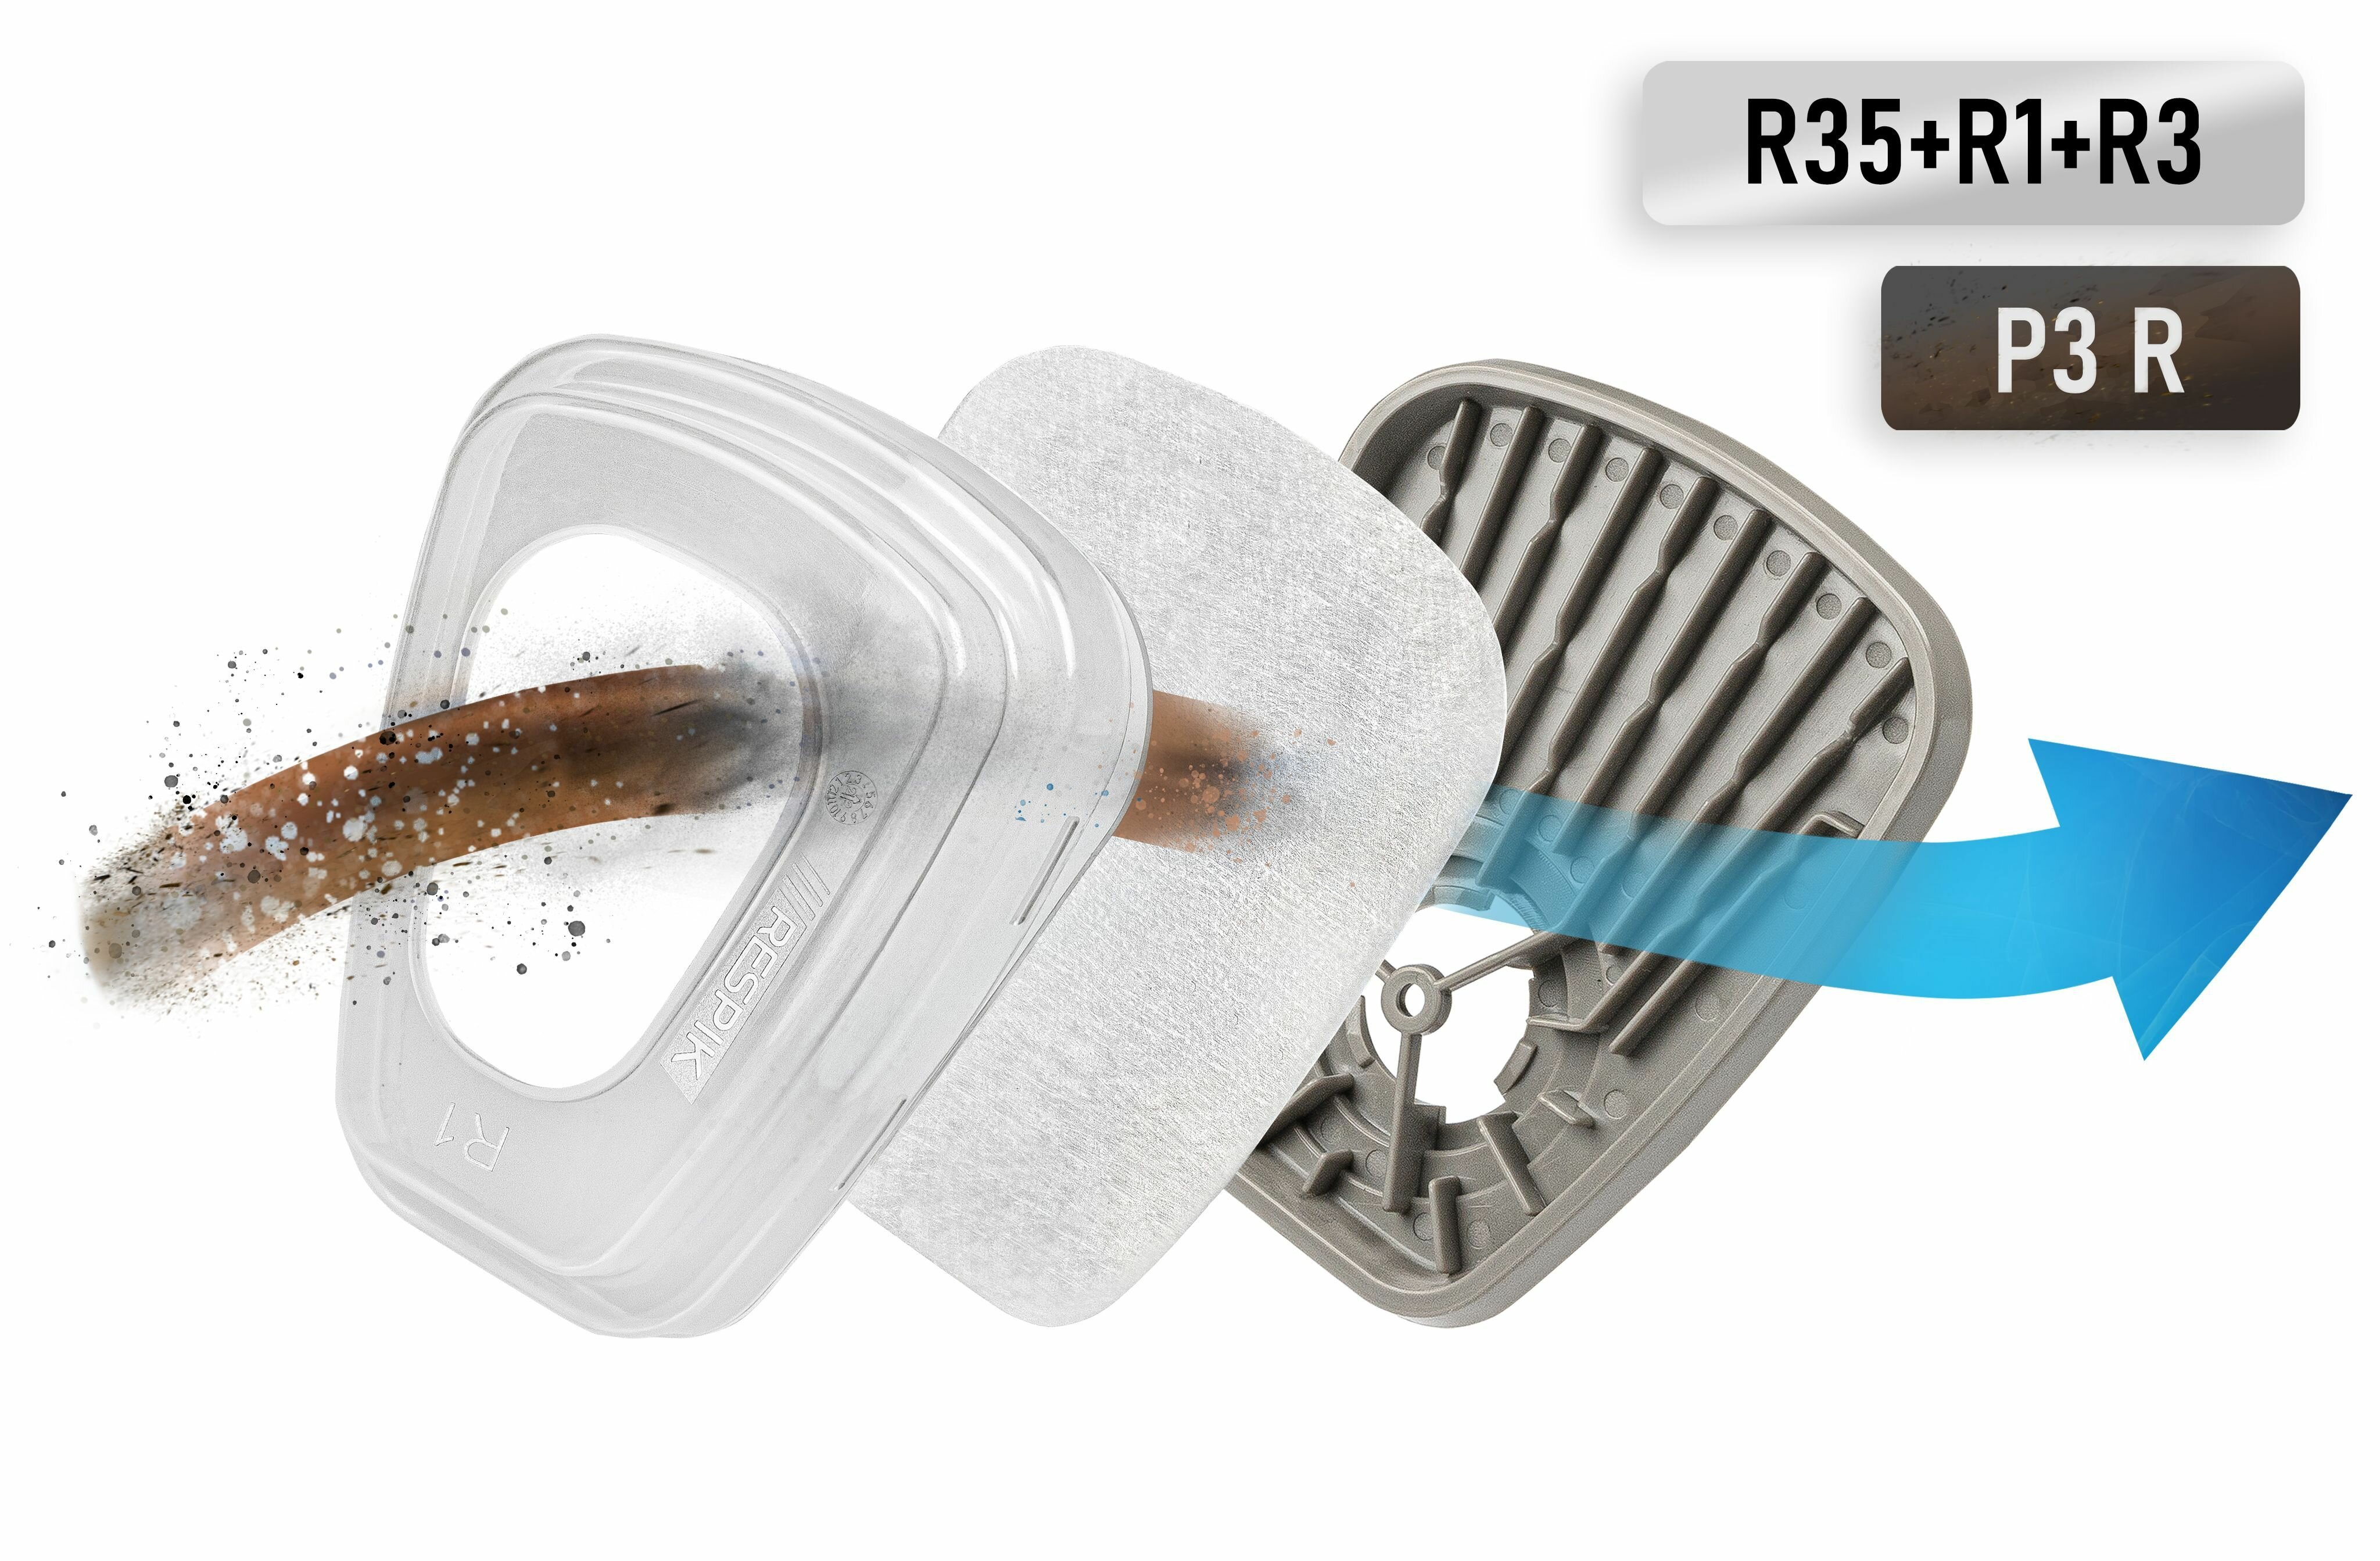 Комплект фильтров для защиты от пыли RESPIK R335 P3 R (R35 + R3 + R1) для масок / полумасок 3М , JETA SAFETY , руссиз , RESPIK - фотография № 1